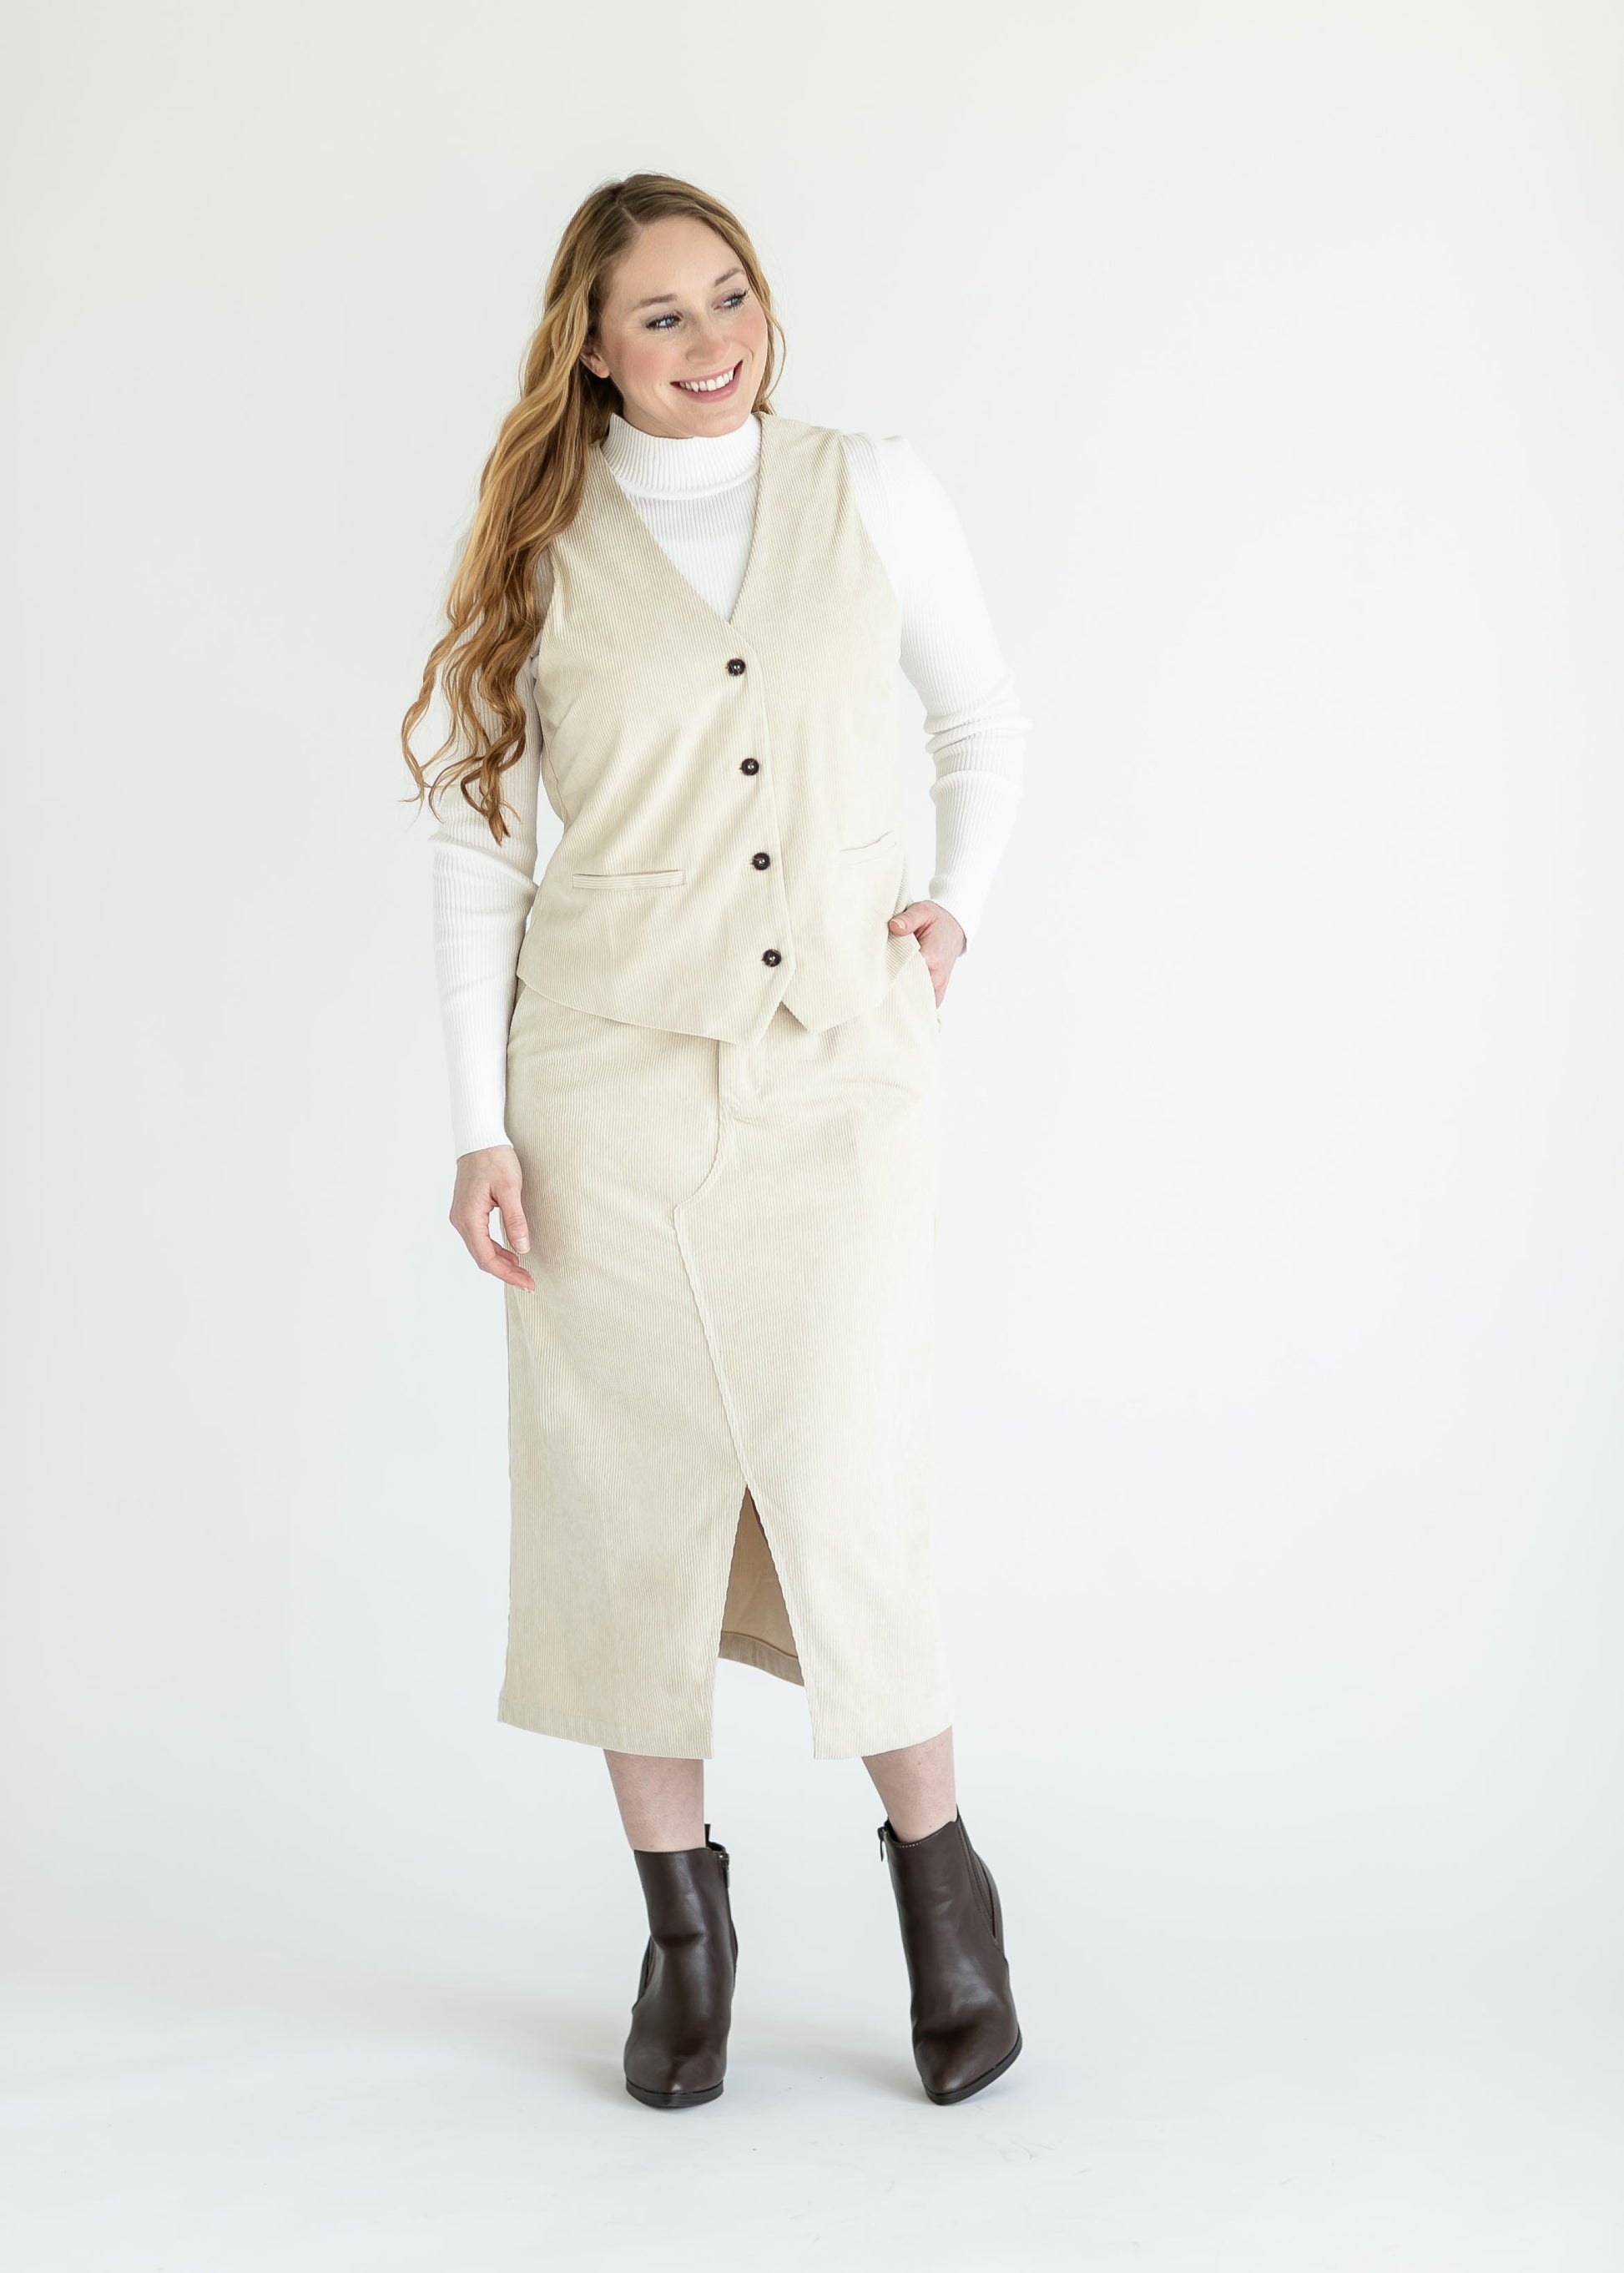 Corduroy Vest and Skirt Set FF Tops Skirt / S